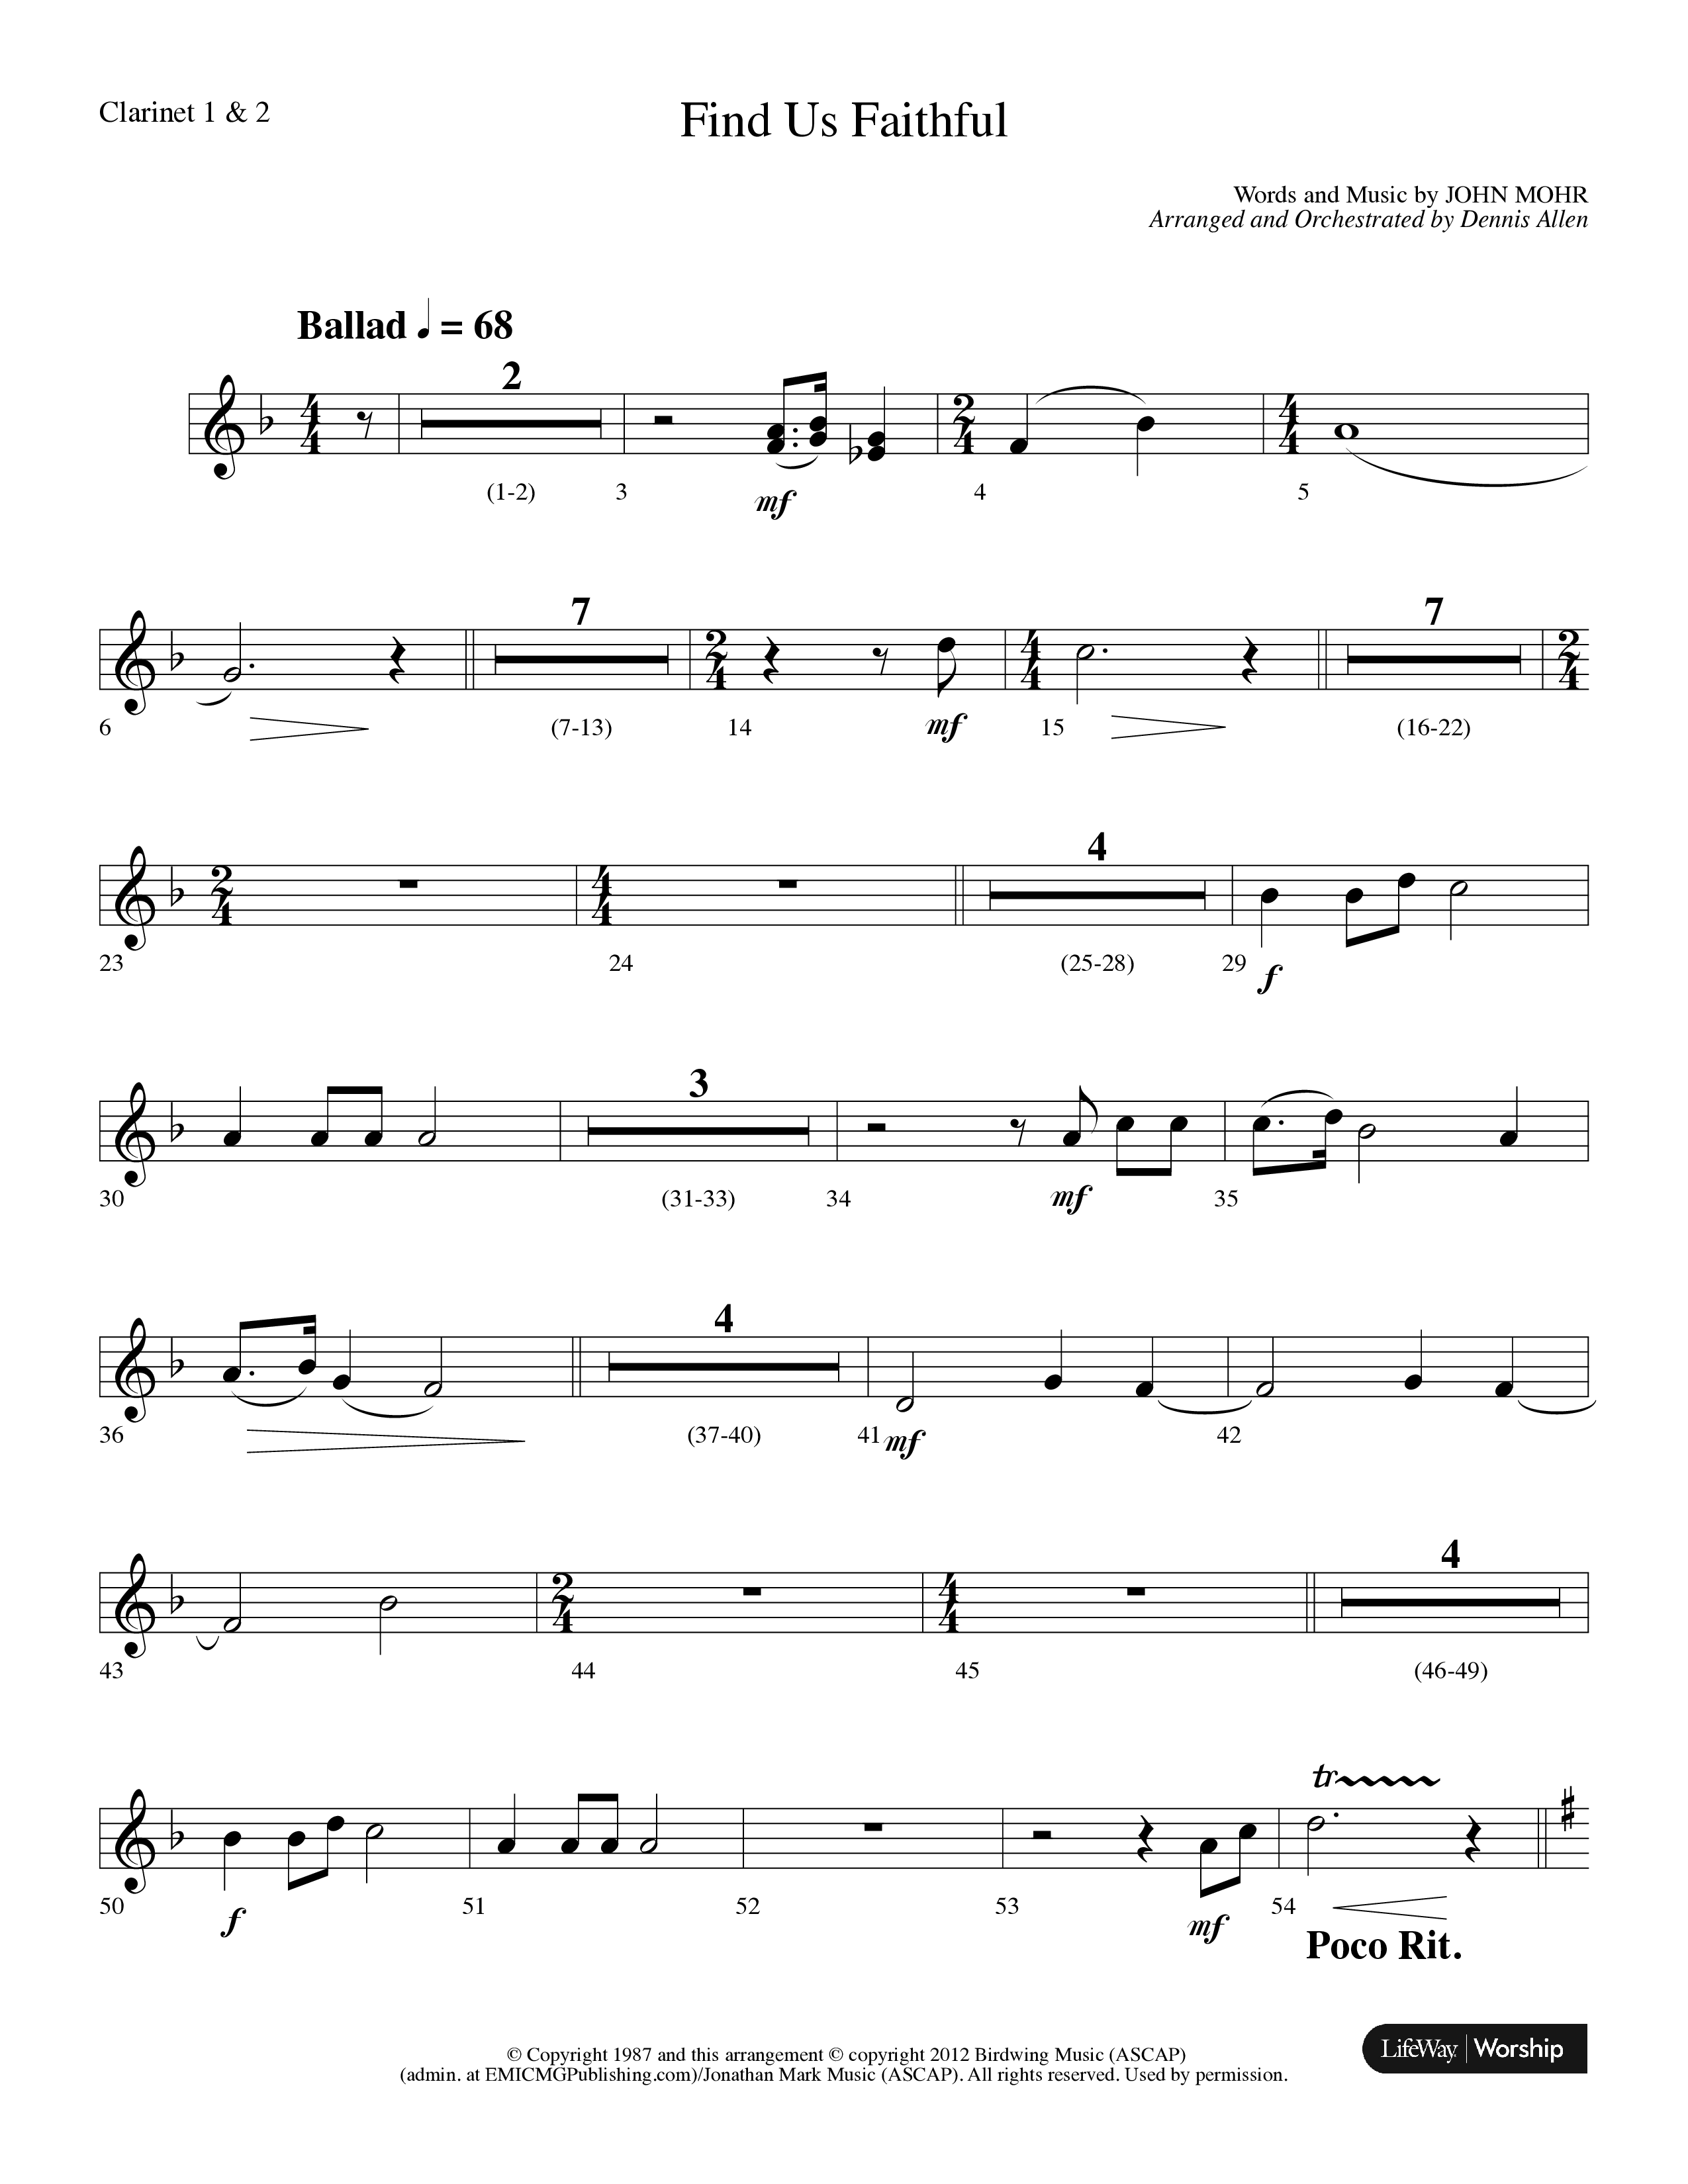 Find Us Faithful (Choral Anthem SATB) Clarinet 1/2 (Lifeway Choral / Arr. Dennis Allen)